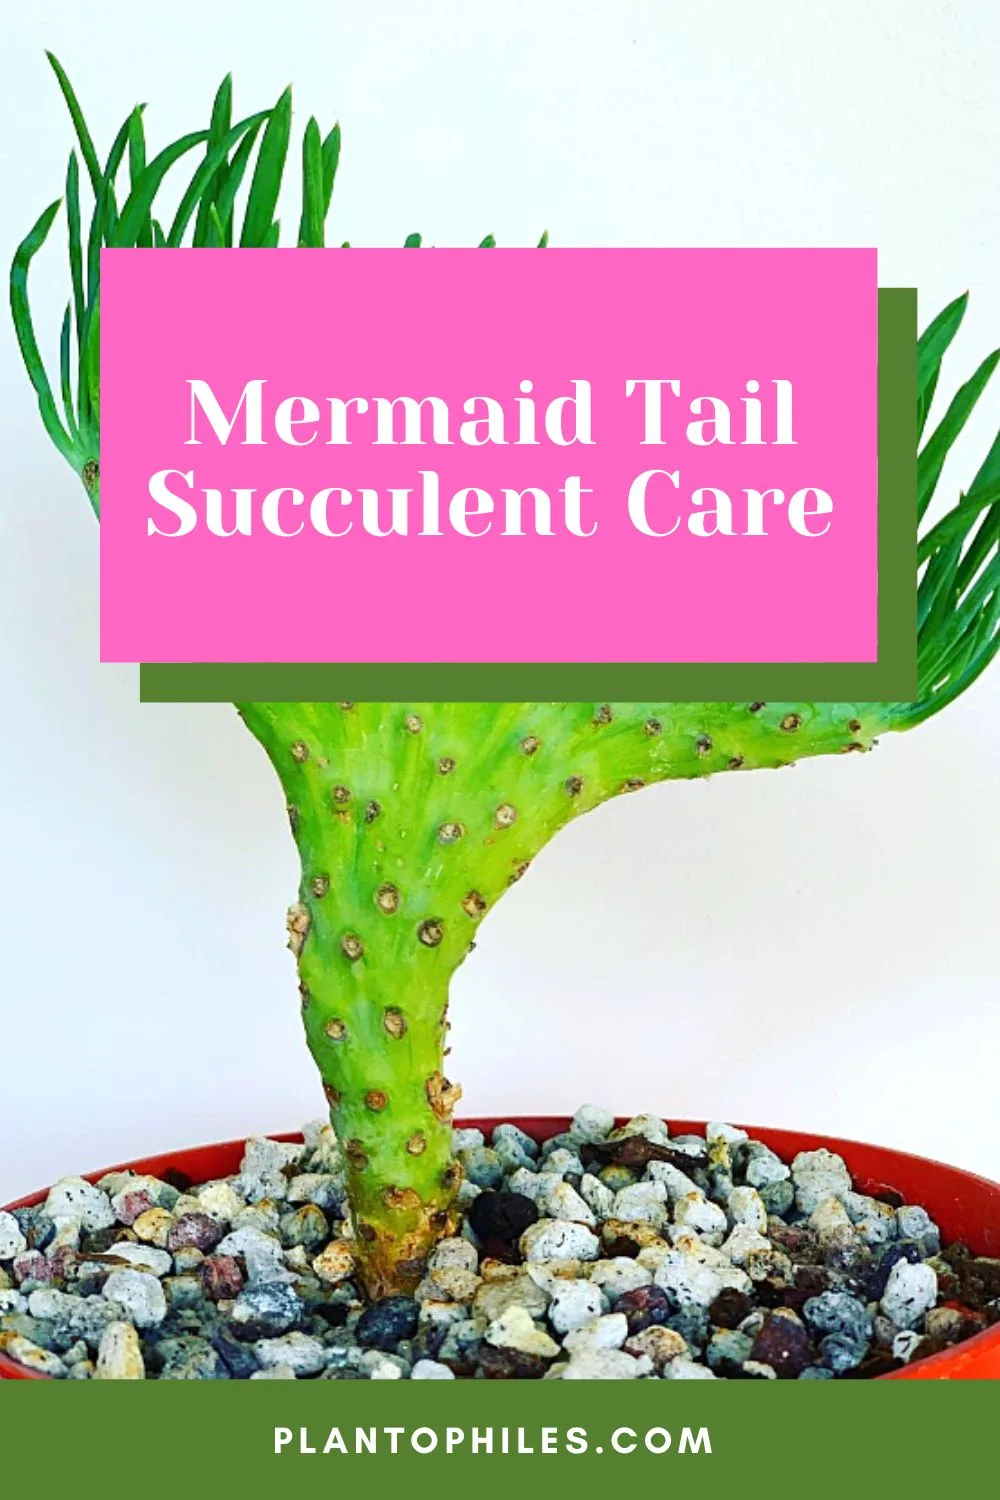 Mermaid Tail Succulent Care